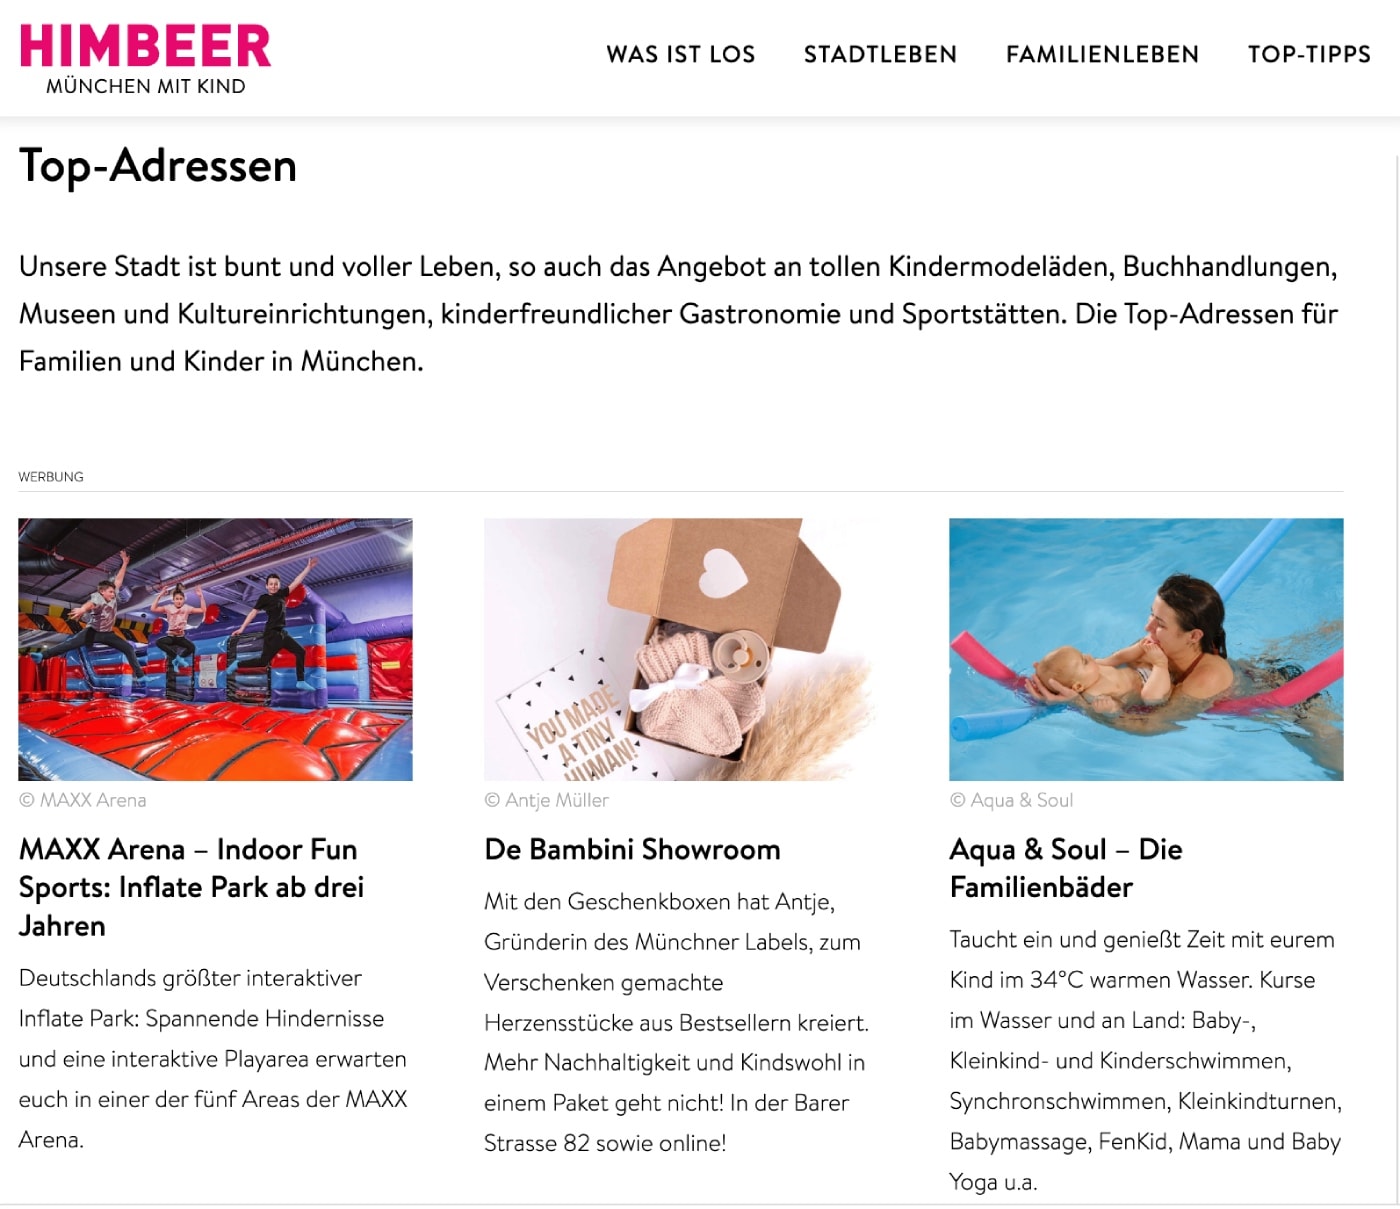 Top-Adressen für Familien mit Kindern in München // HIMBEER